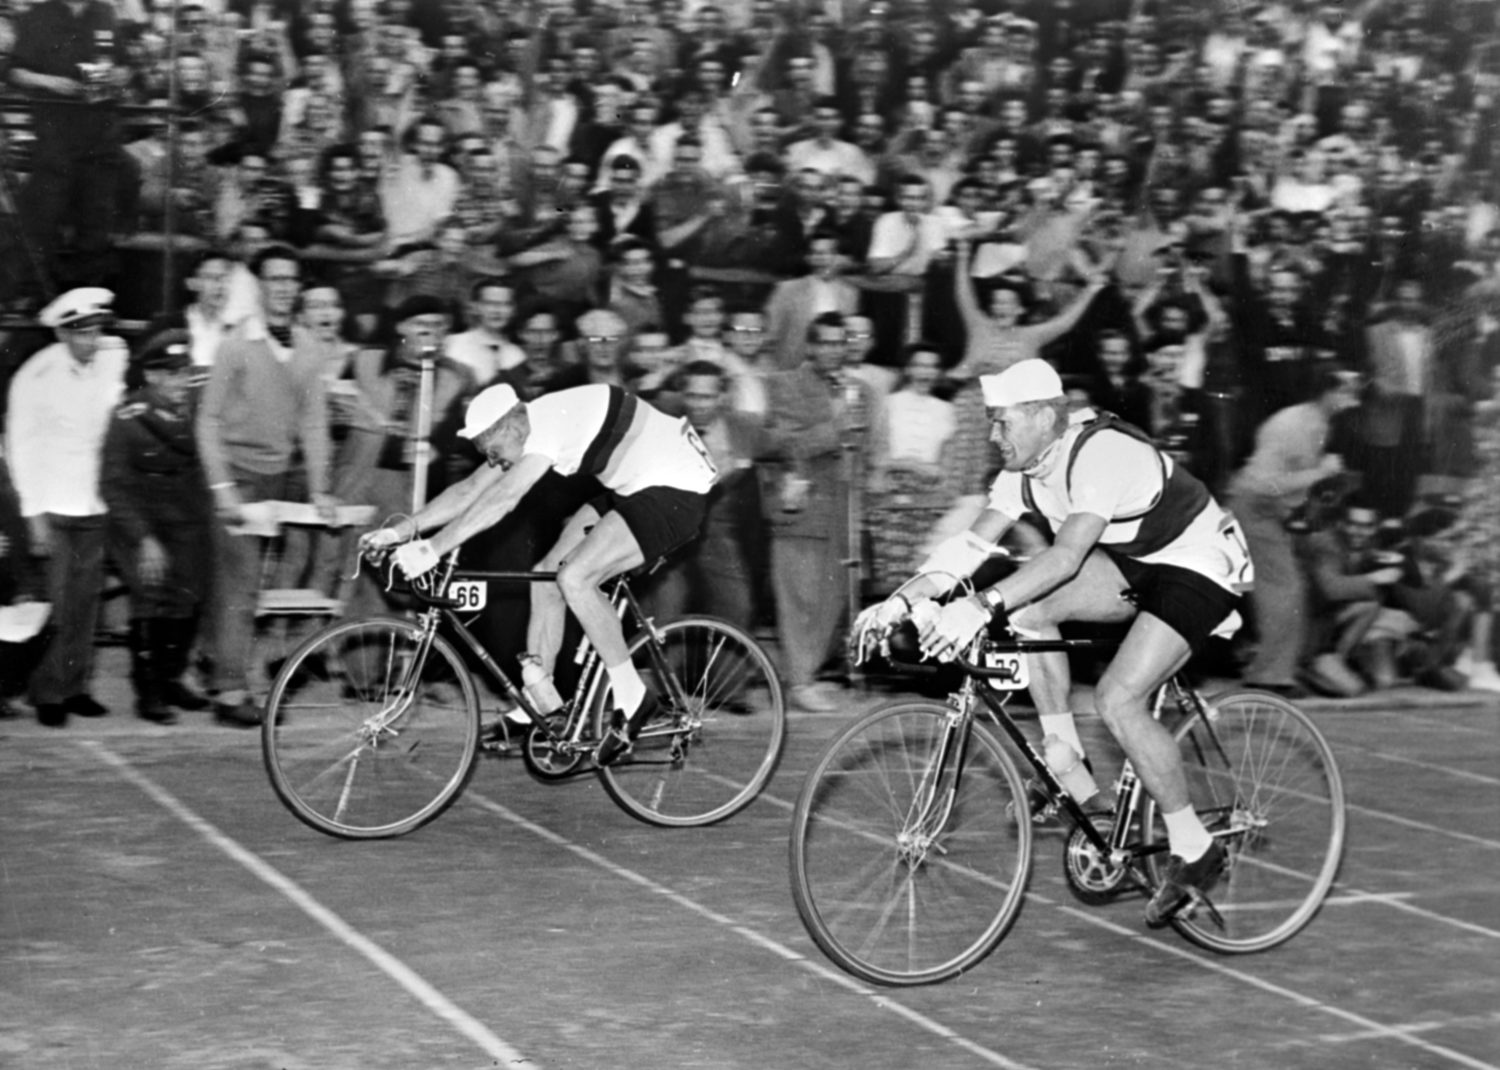 DDR-Rennradlegende Gustav Schur (links) bei der Internationalen Friedensfahrt, 1956. Foto: Imago/Topfoto/United Archives International